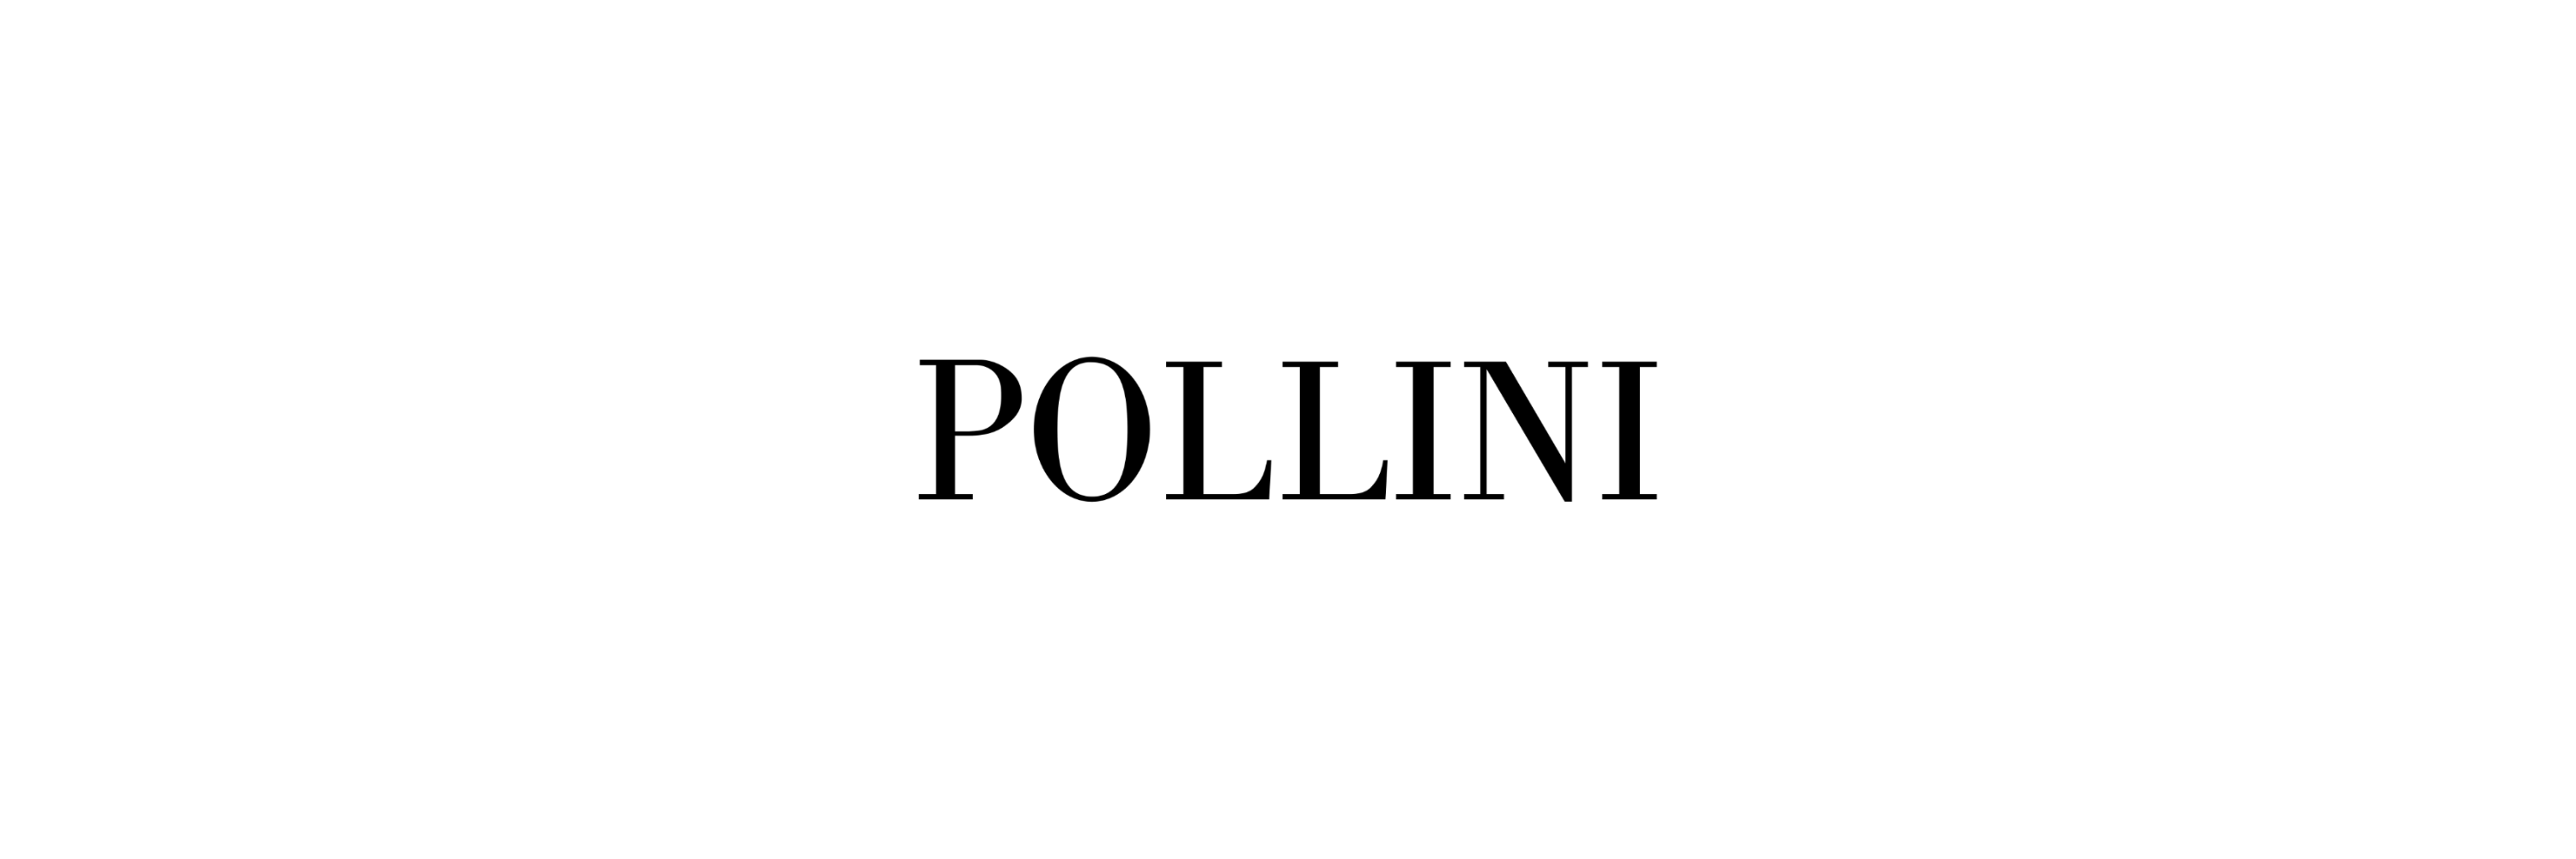 Borse Pollini